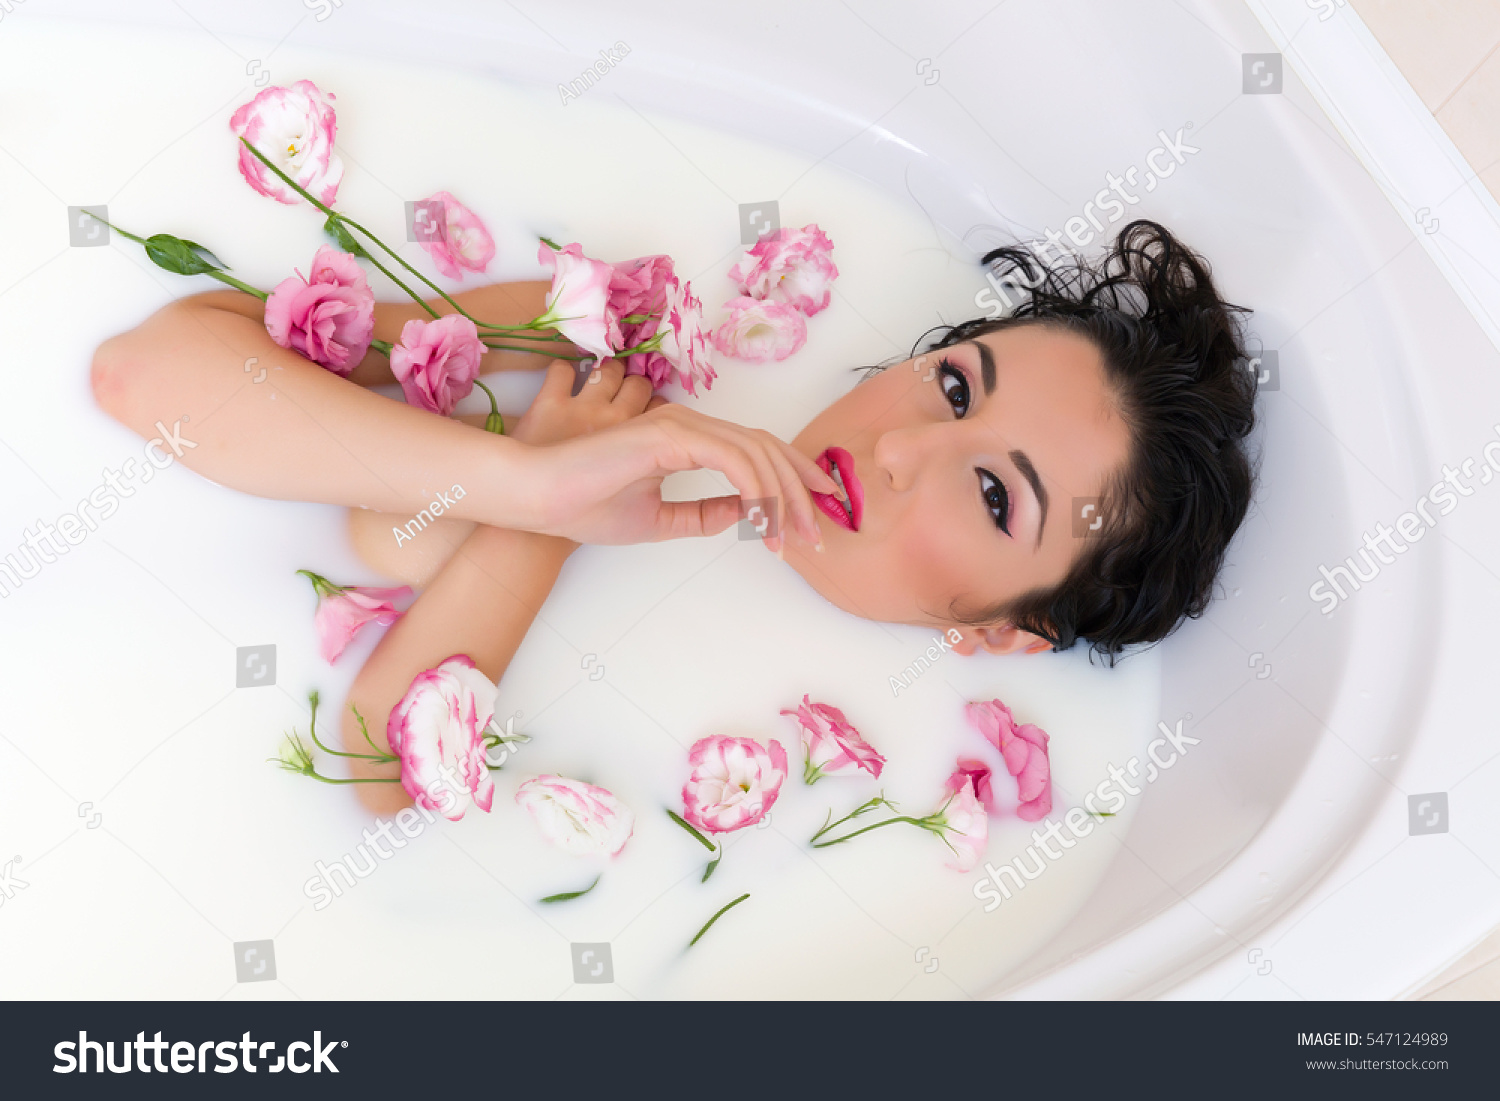 Руки в молочной ванне с цветами украшения